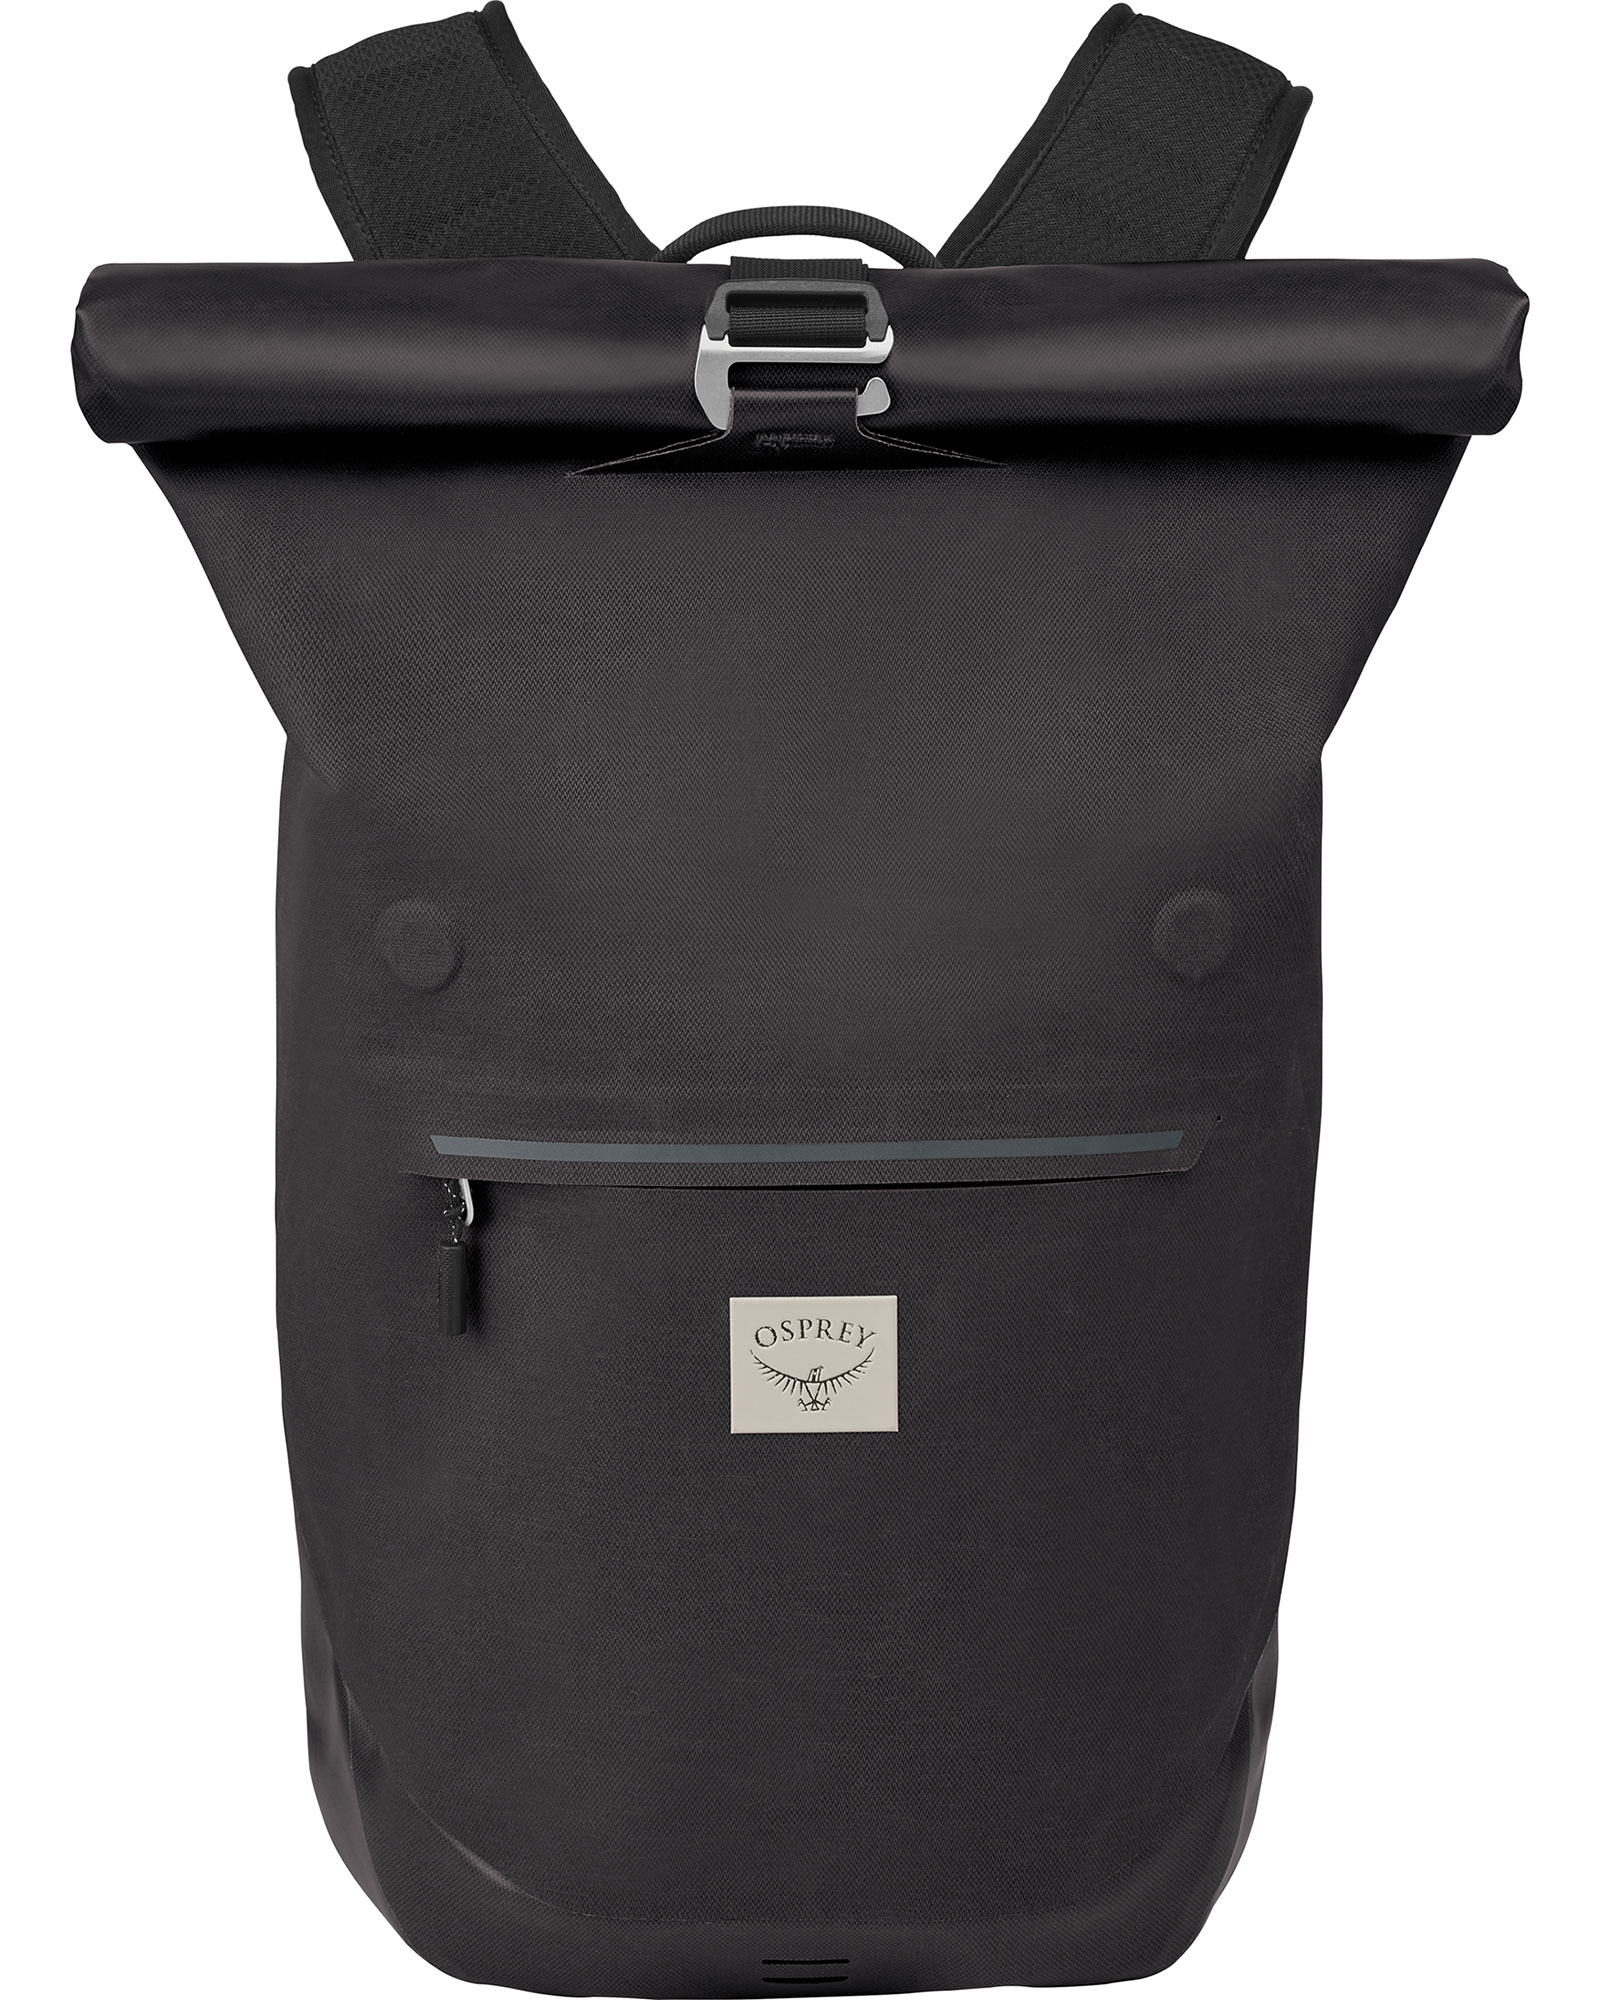 Osprey Arcane 18 Waterproof Roll Top Backpack - Stonewash Black